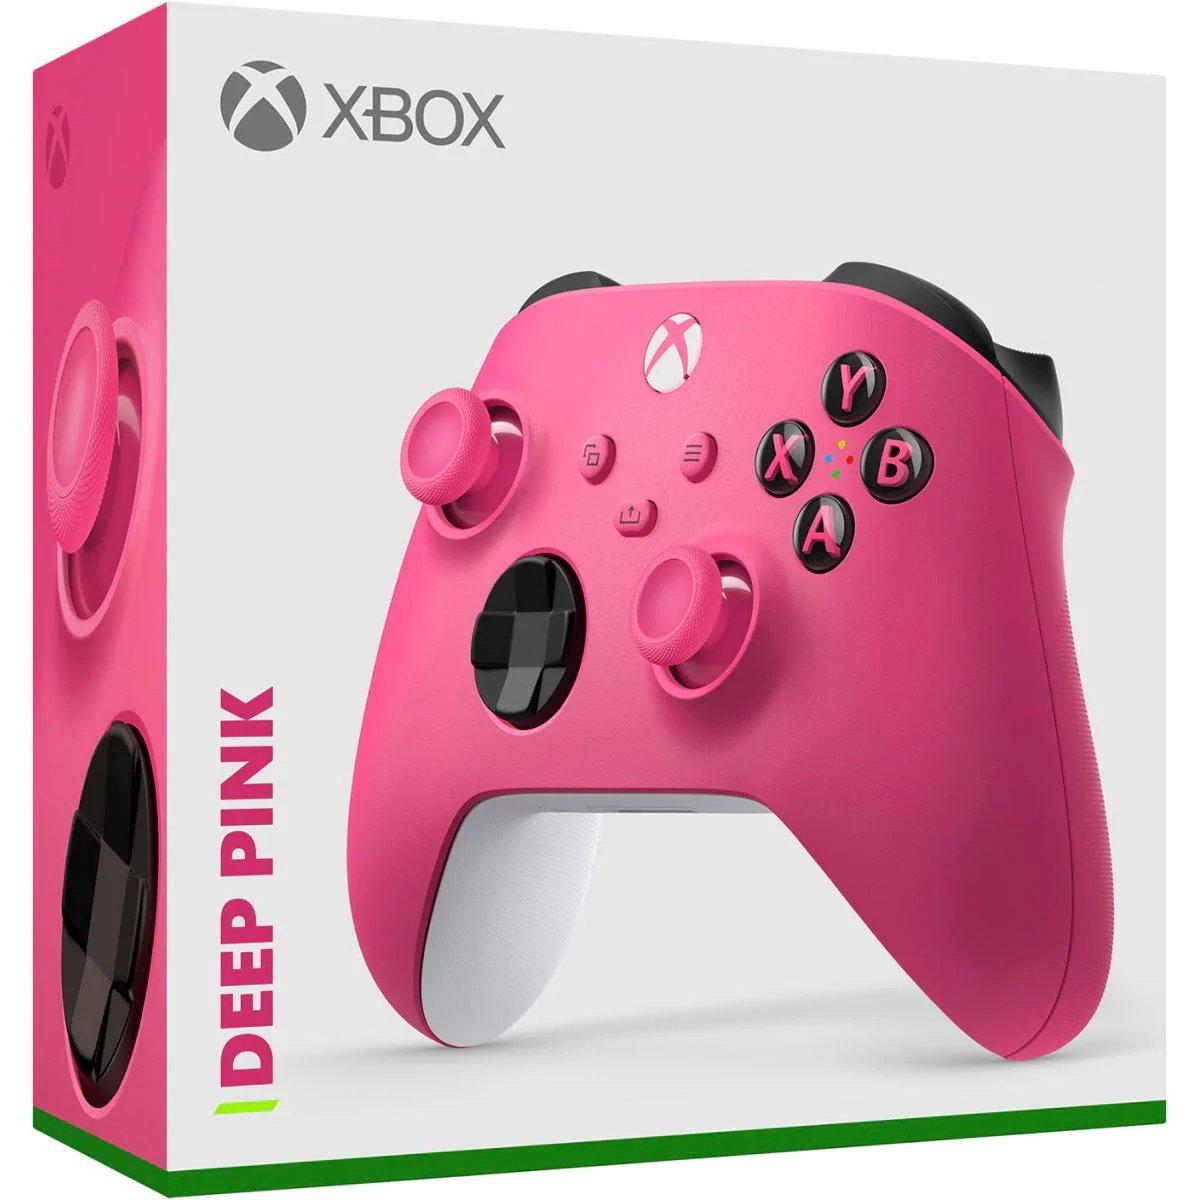 Xbox Draadloze Controller Deep Pink voor Xbox Series X|S, Xbox One, Windows 10 en Mobile